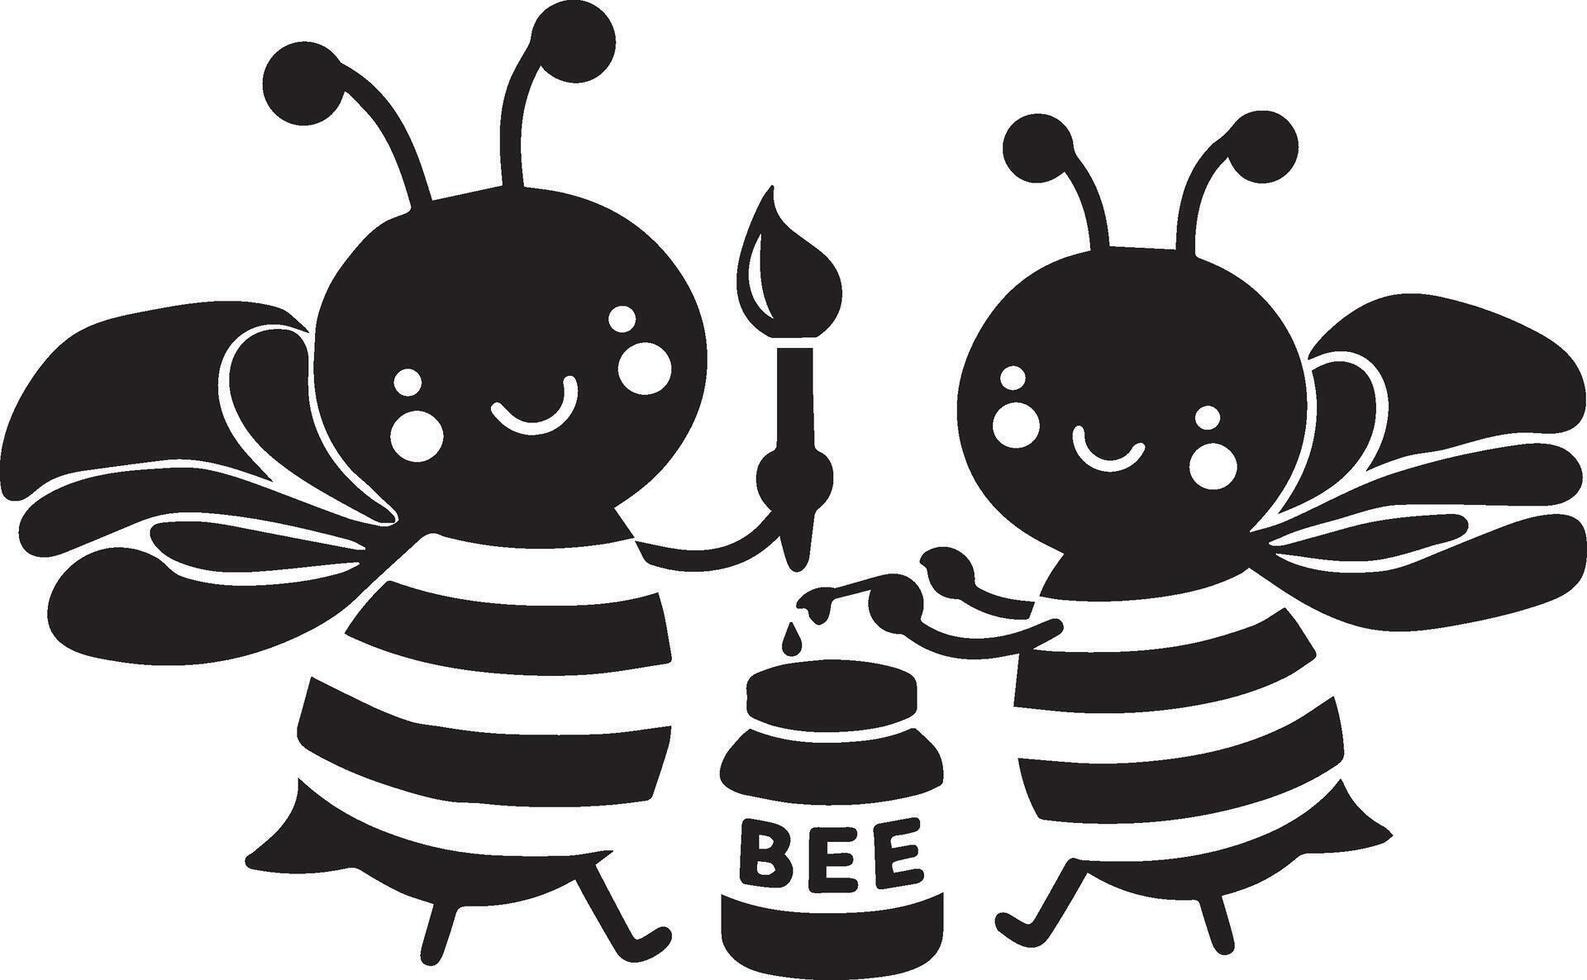 deux abeille collecte mon chéri vecteur silhouette